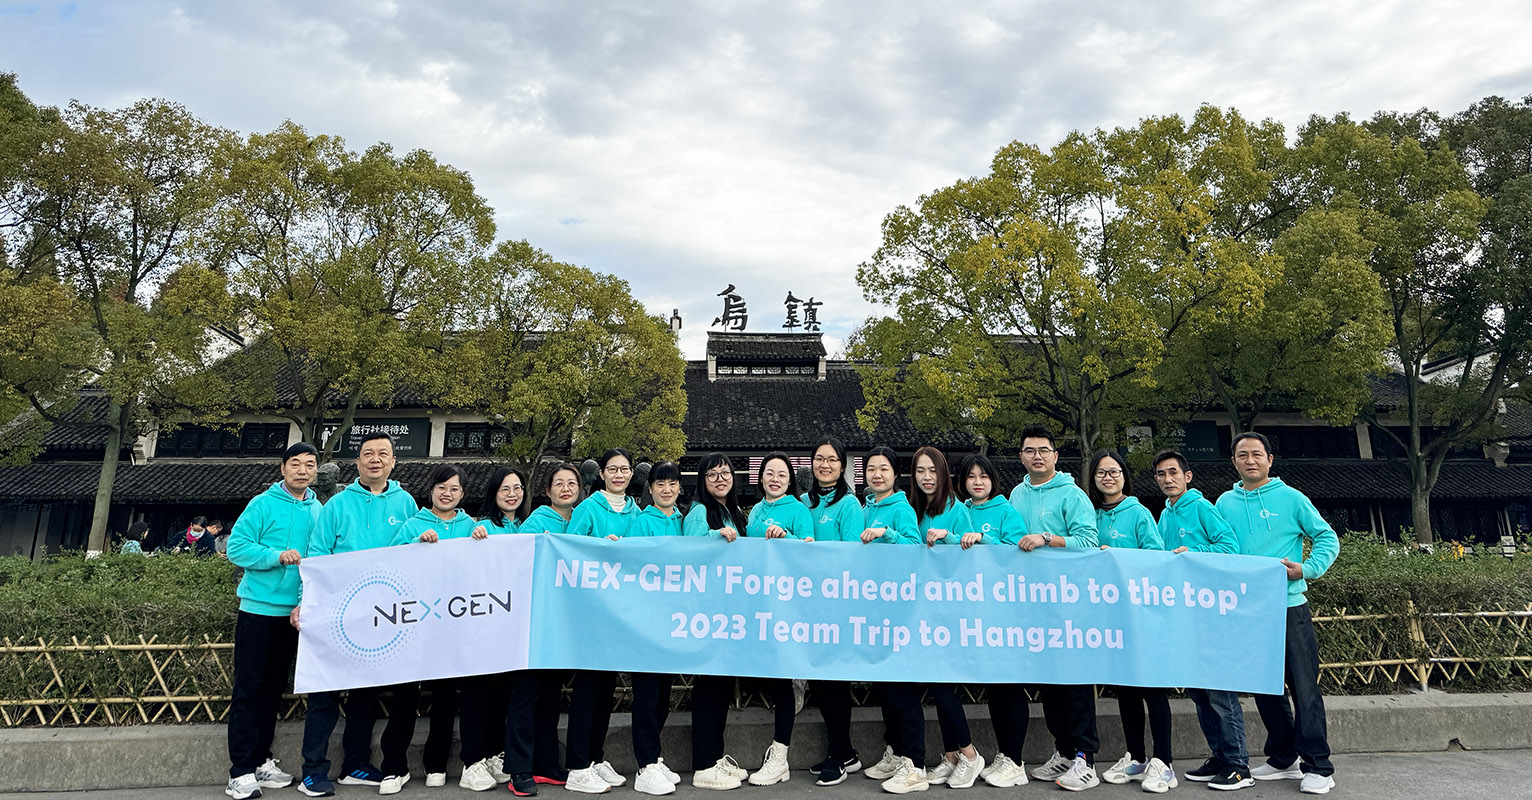 NEX-GEN' Sigue adelante y sube a la cima' Viaje del equipo de 2023 a Hangzhou